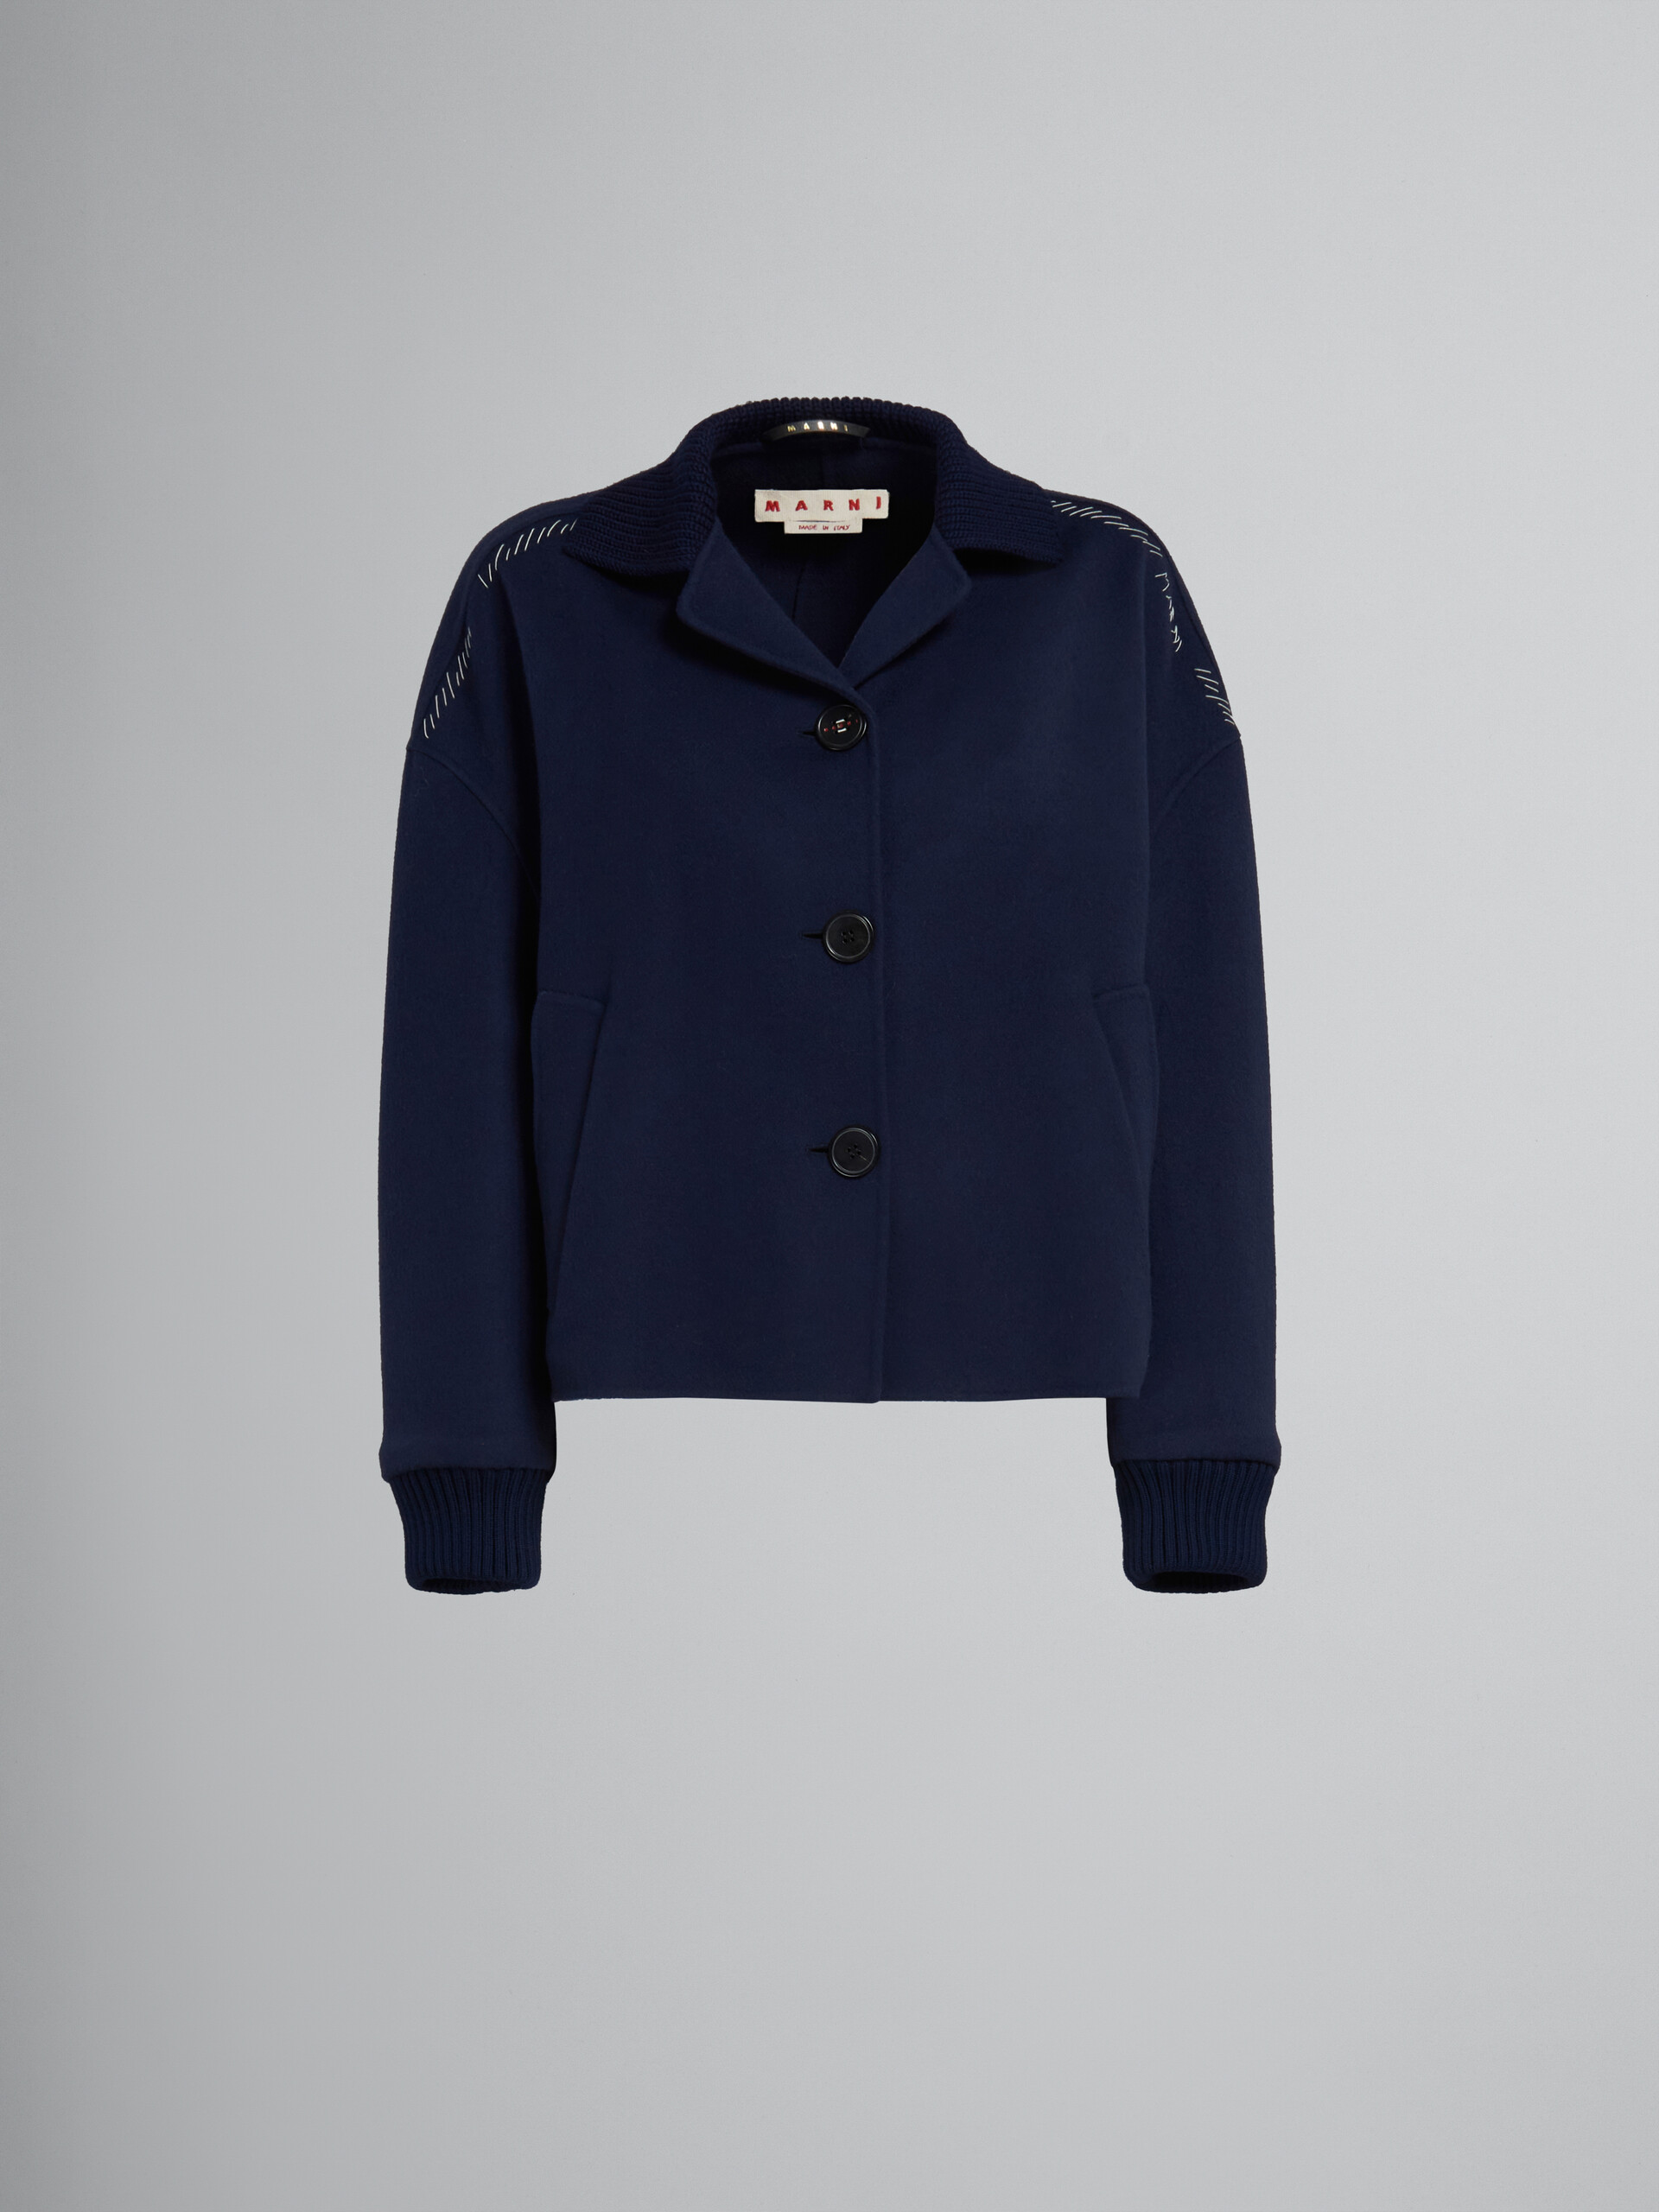 Veste en cachemire et laine bleu profond avec bords en maille - Manteaux - Image 1